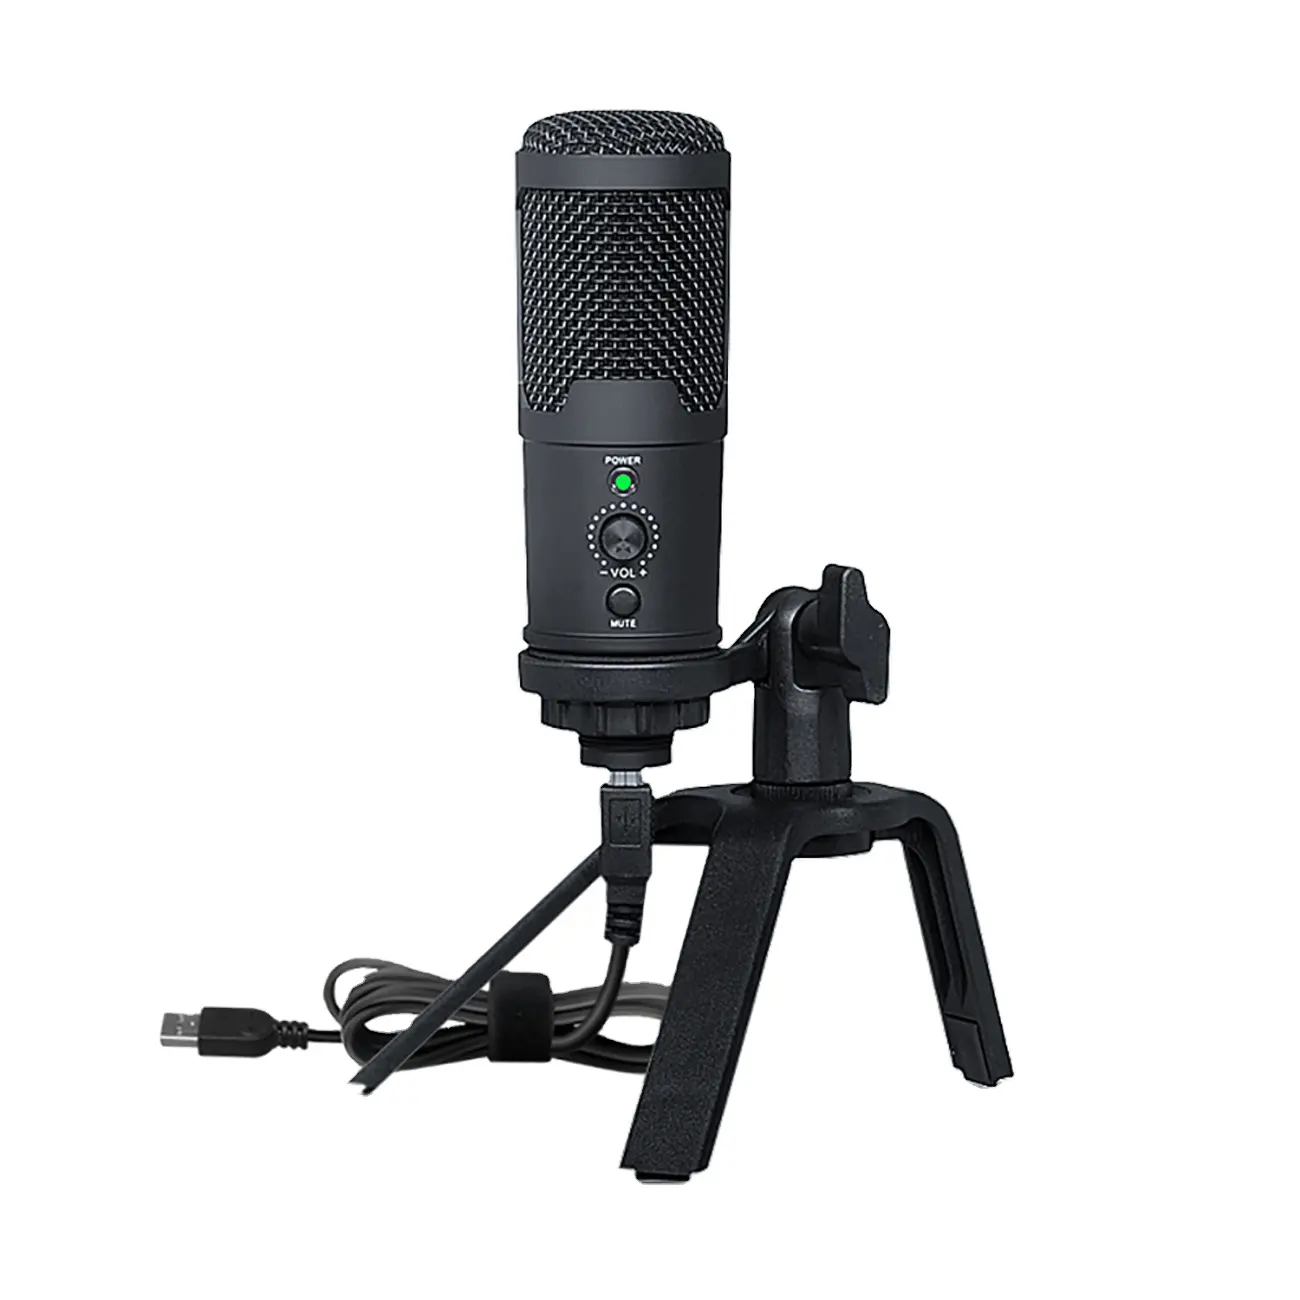 Biner a12 microfone profissional, para pc usb, condensador, preço para gravação, streaming, transmissão, podcast